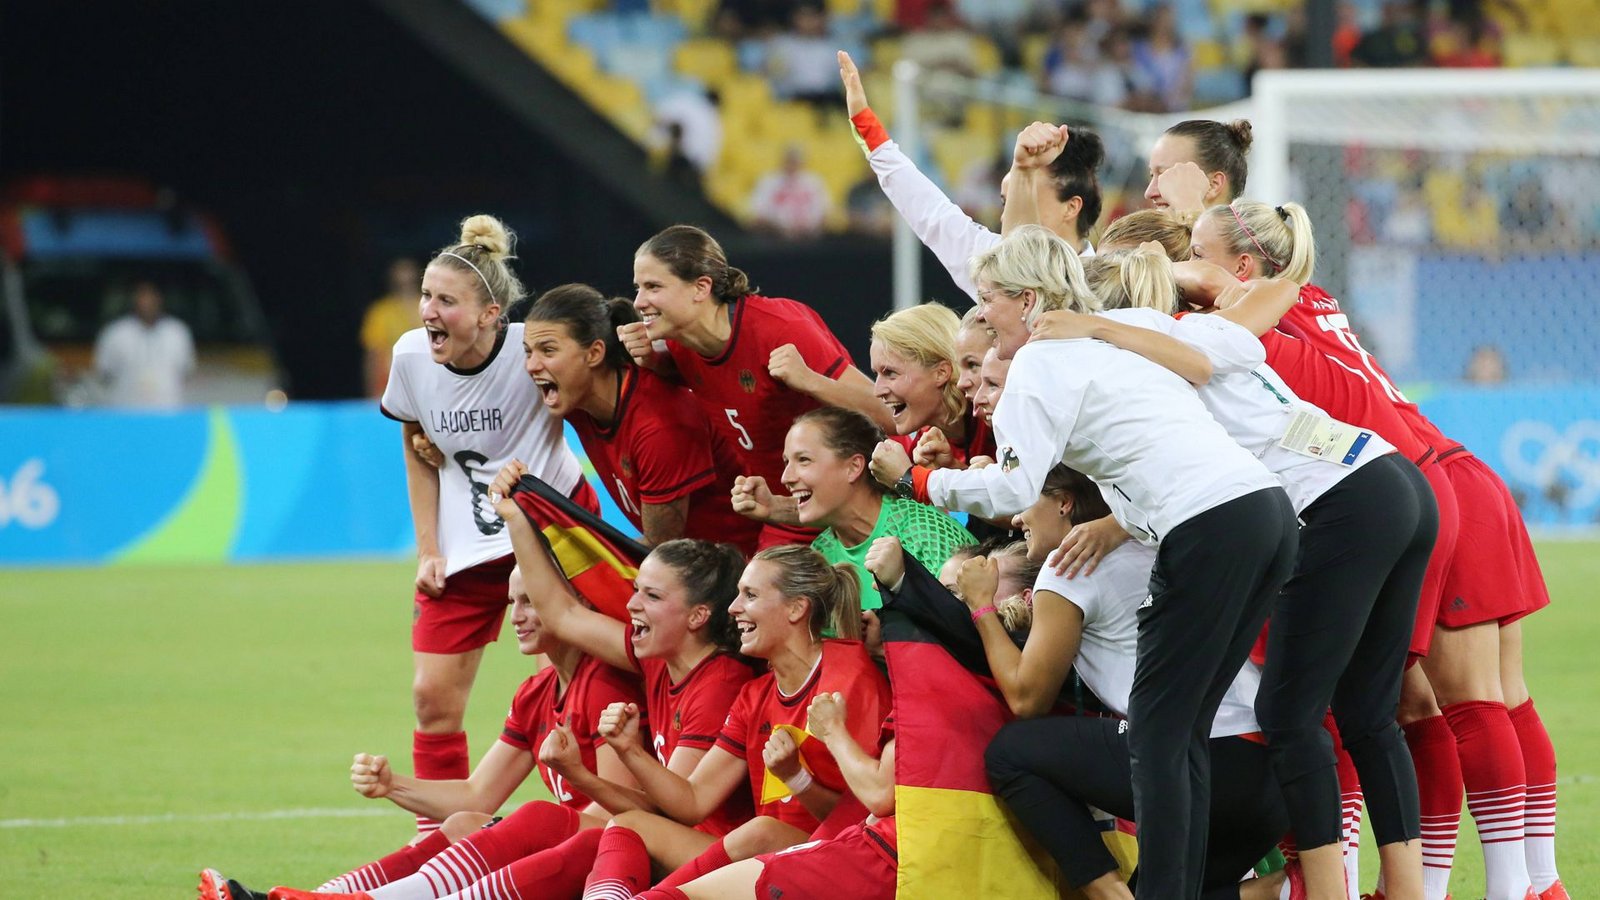 Ihren letzten großen Titel feierten die deutschen Fußball-Frauen mit dem Olympiasieg 2016 in Rio.Foto: imago images/Rene Schulz/imago sportfotodienst